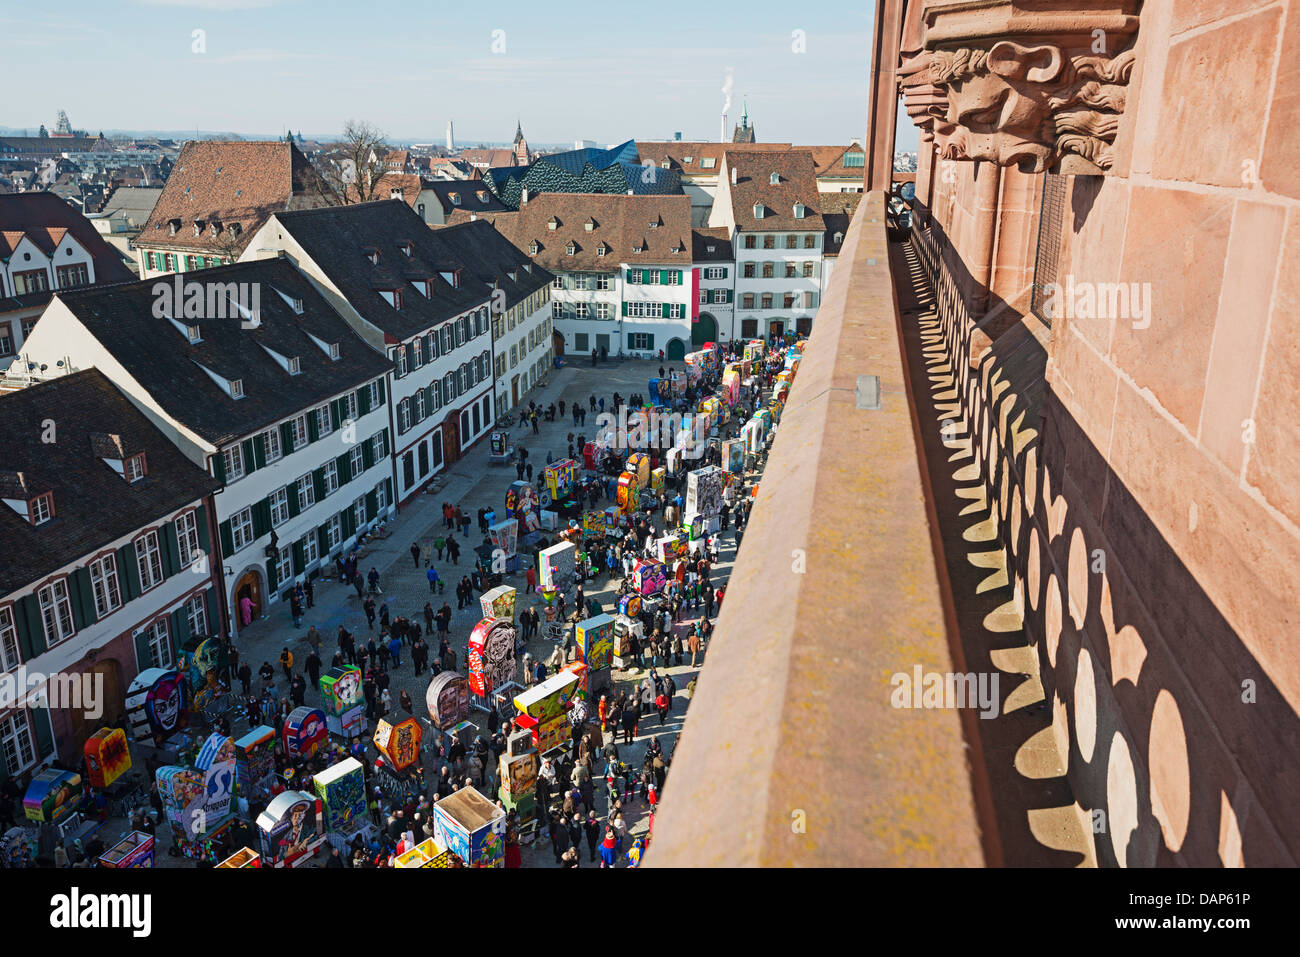 L'Europe, suisse, Bâle, Fasnact lanterne carnaval du printemps s'affiche en dessous de la cathédrale de Bâle Banque D'Images